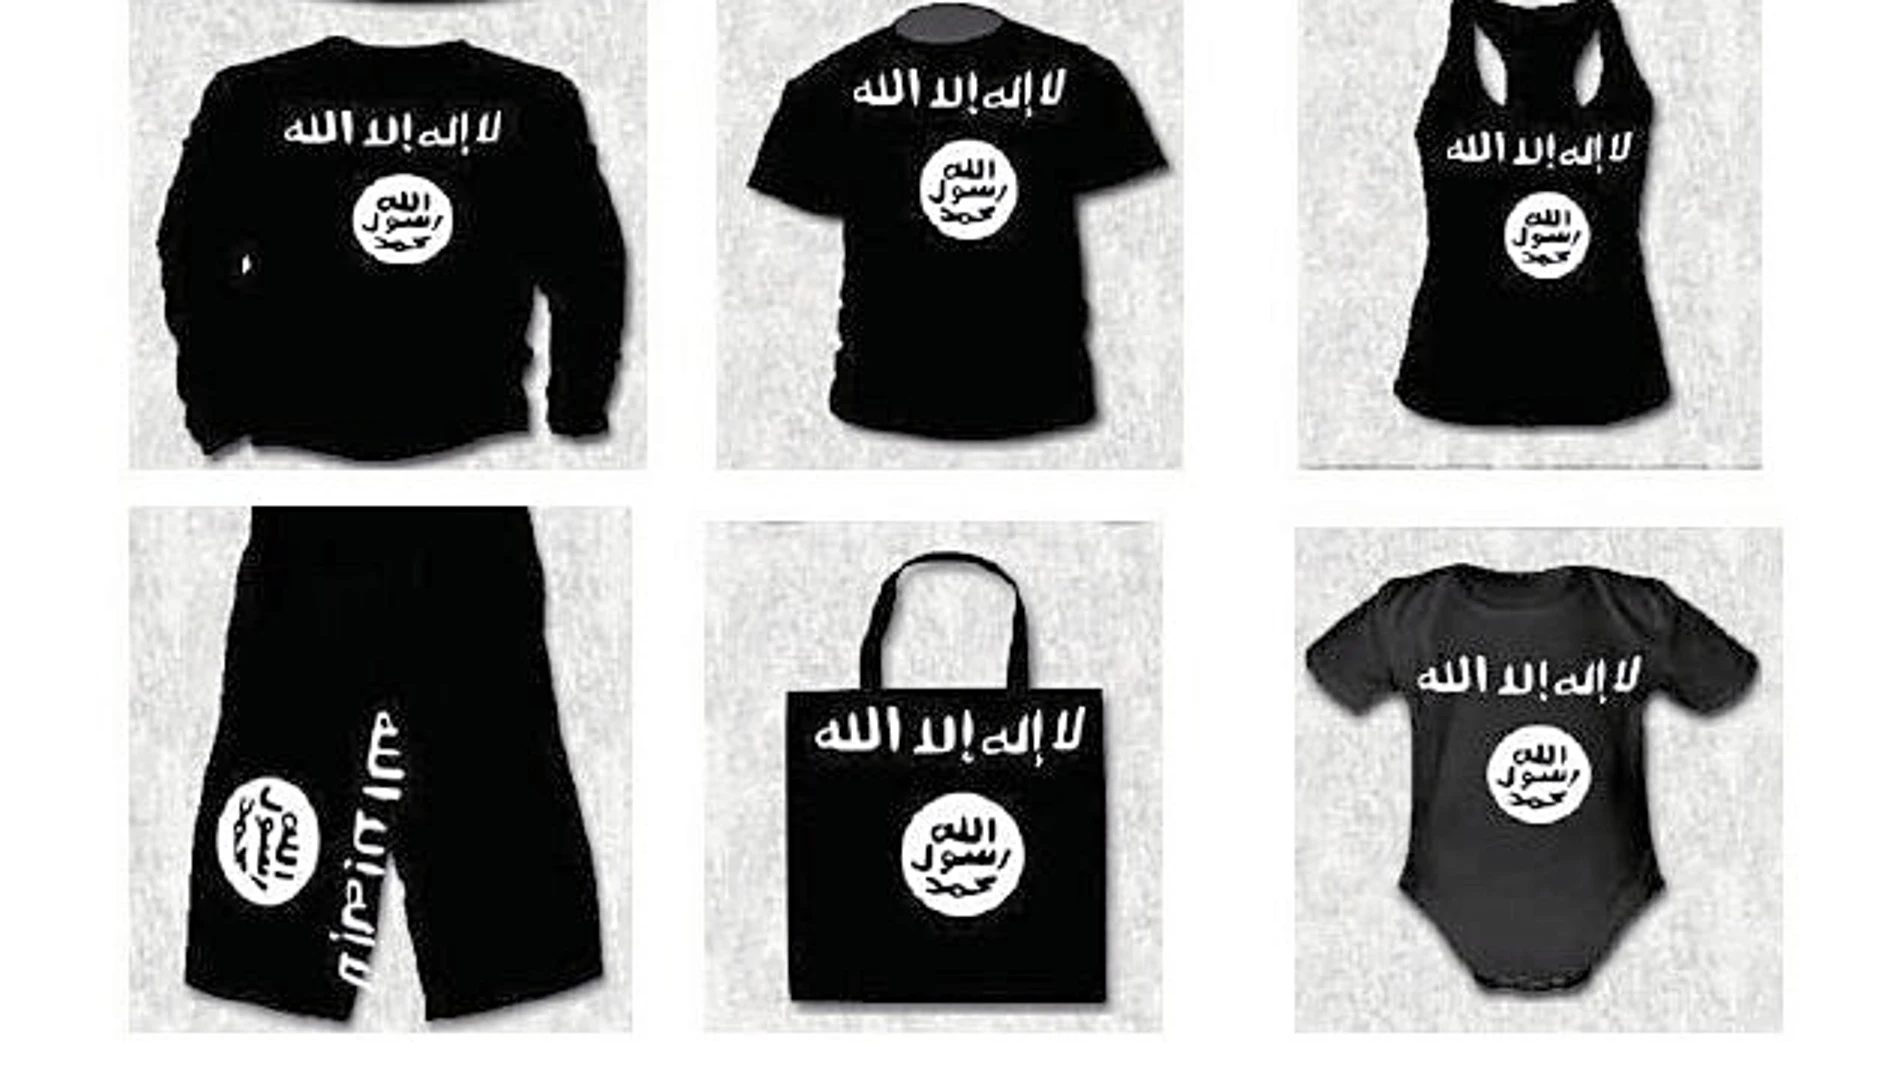 El arrestado por apología del terrorismo vendía ropa «yihadista»